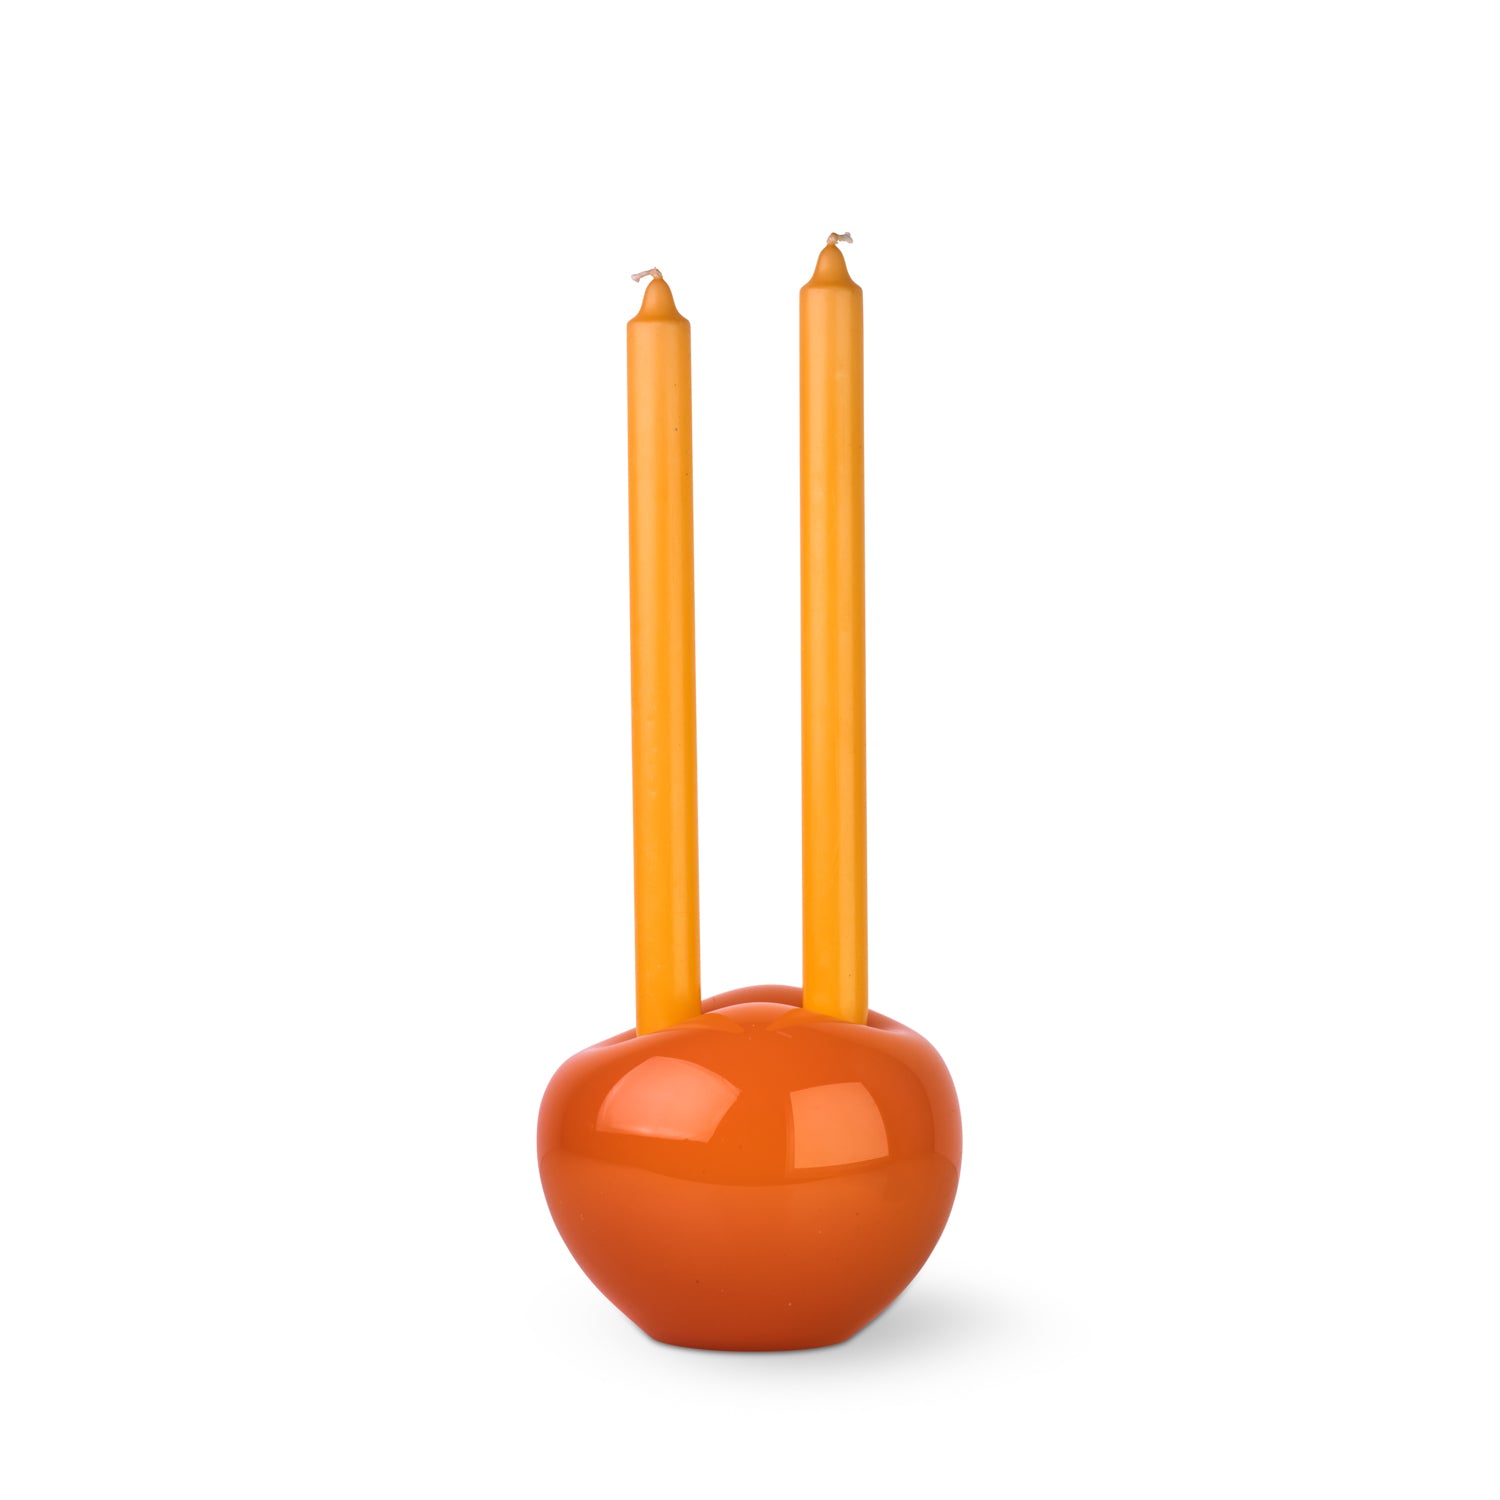 Candleholder Atol large orange-red